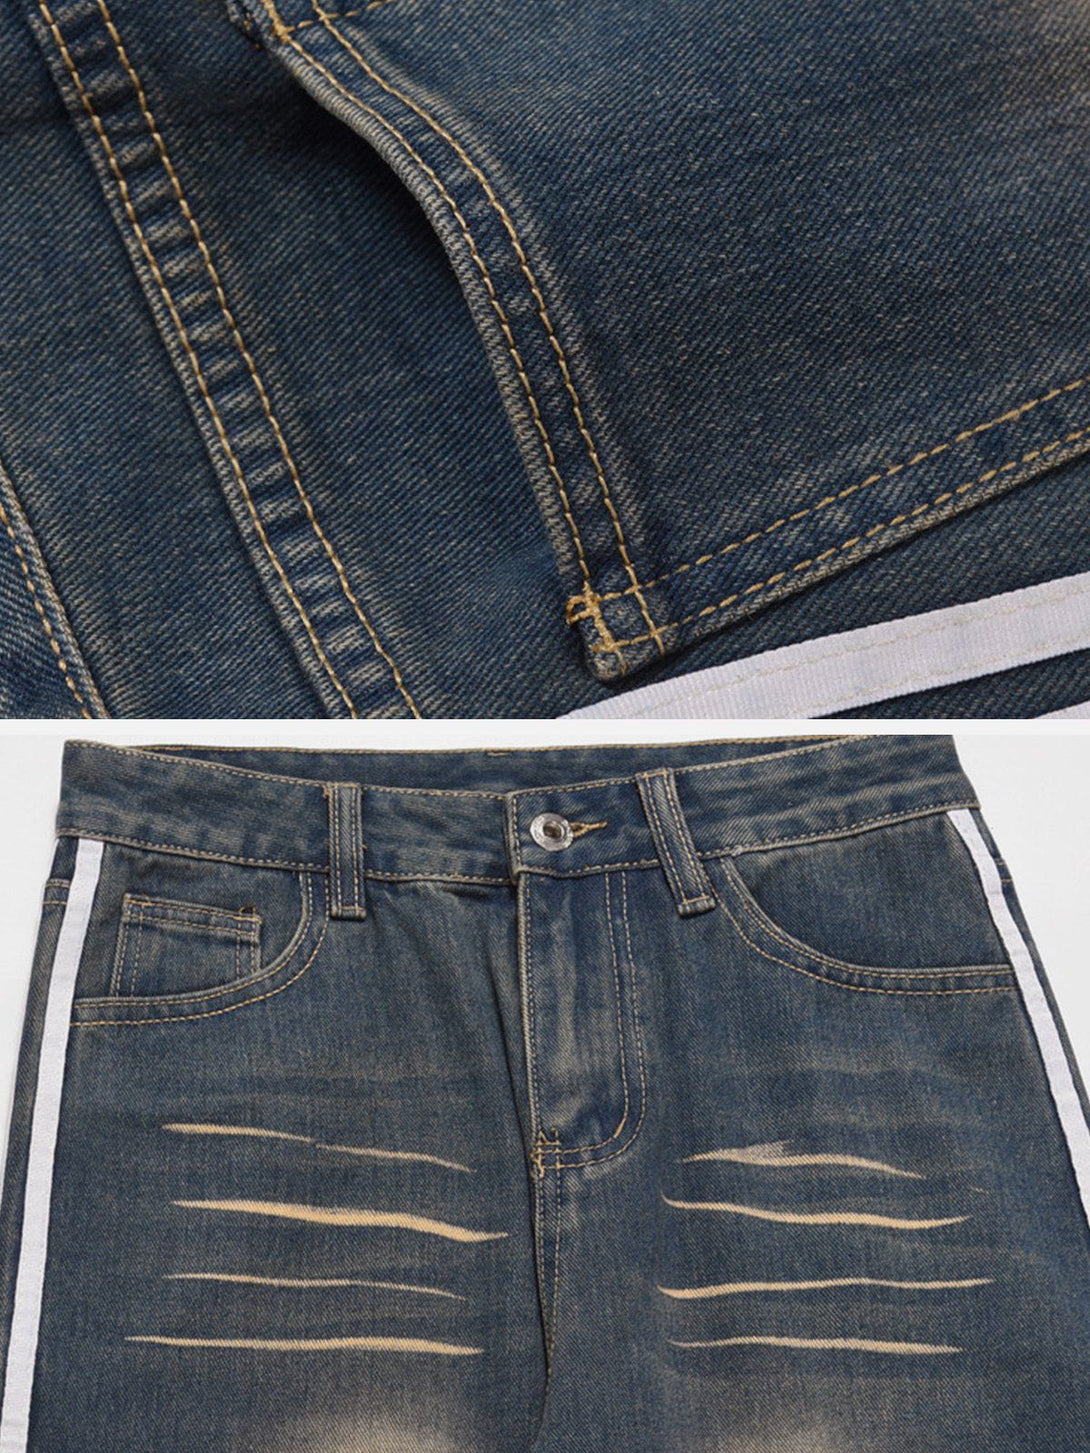 AlanBalen® - Stripe Washed Jeans AlanBalen